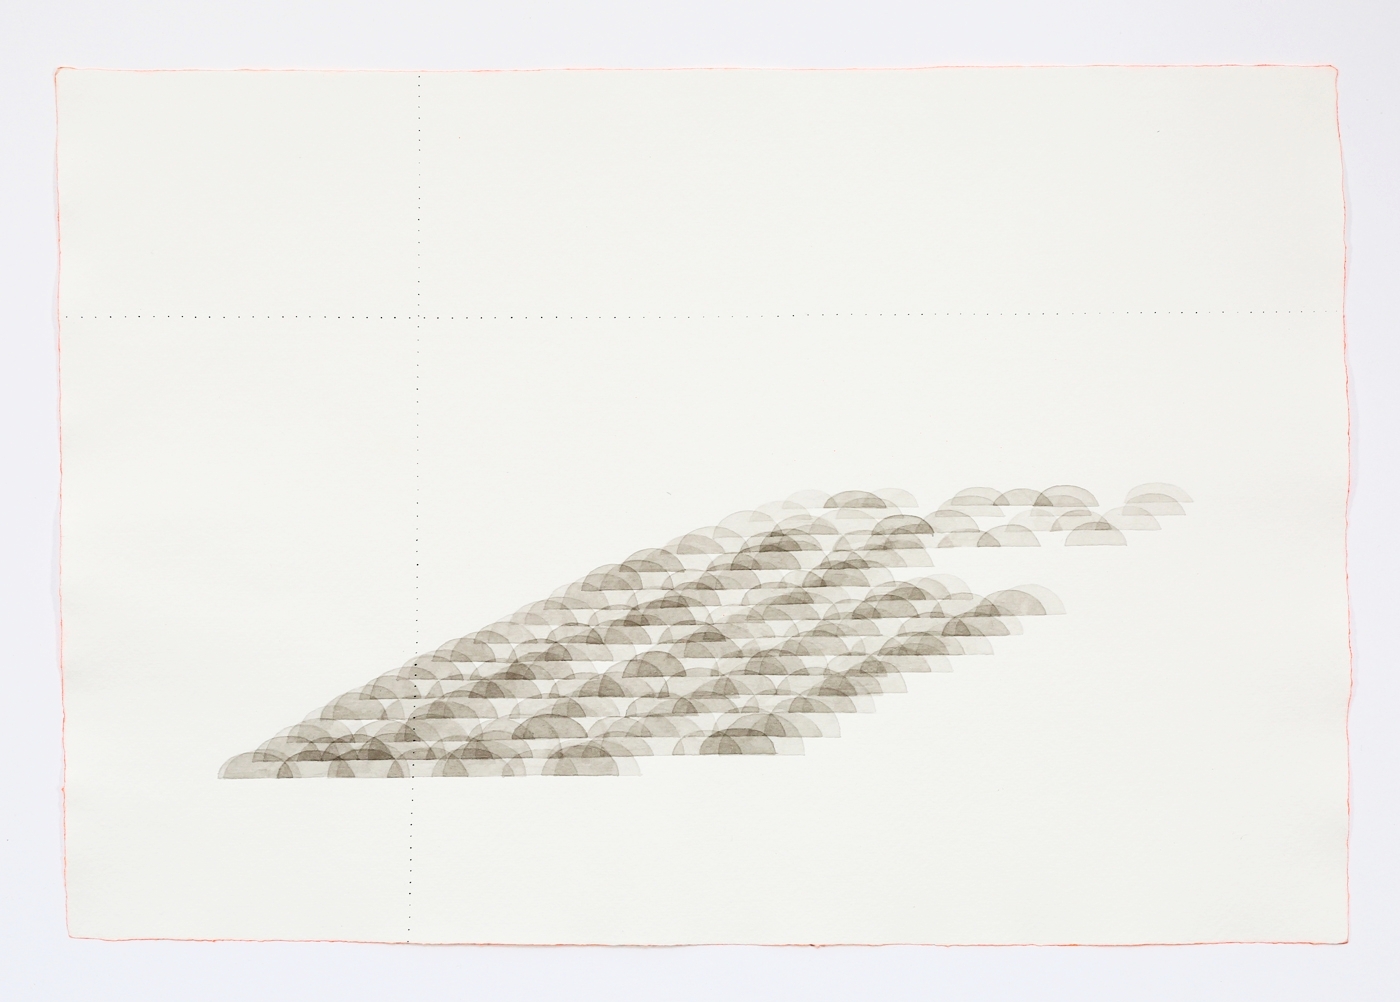  Landscape. 2011. Ink on paper. 11" x 17" 